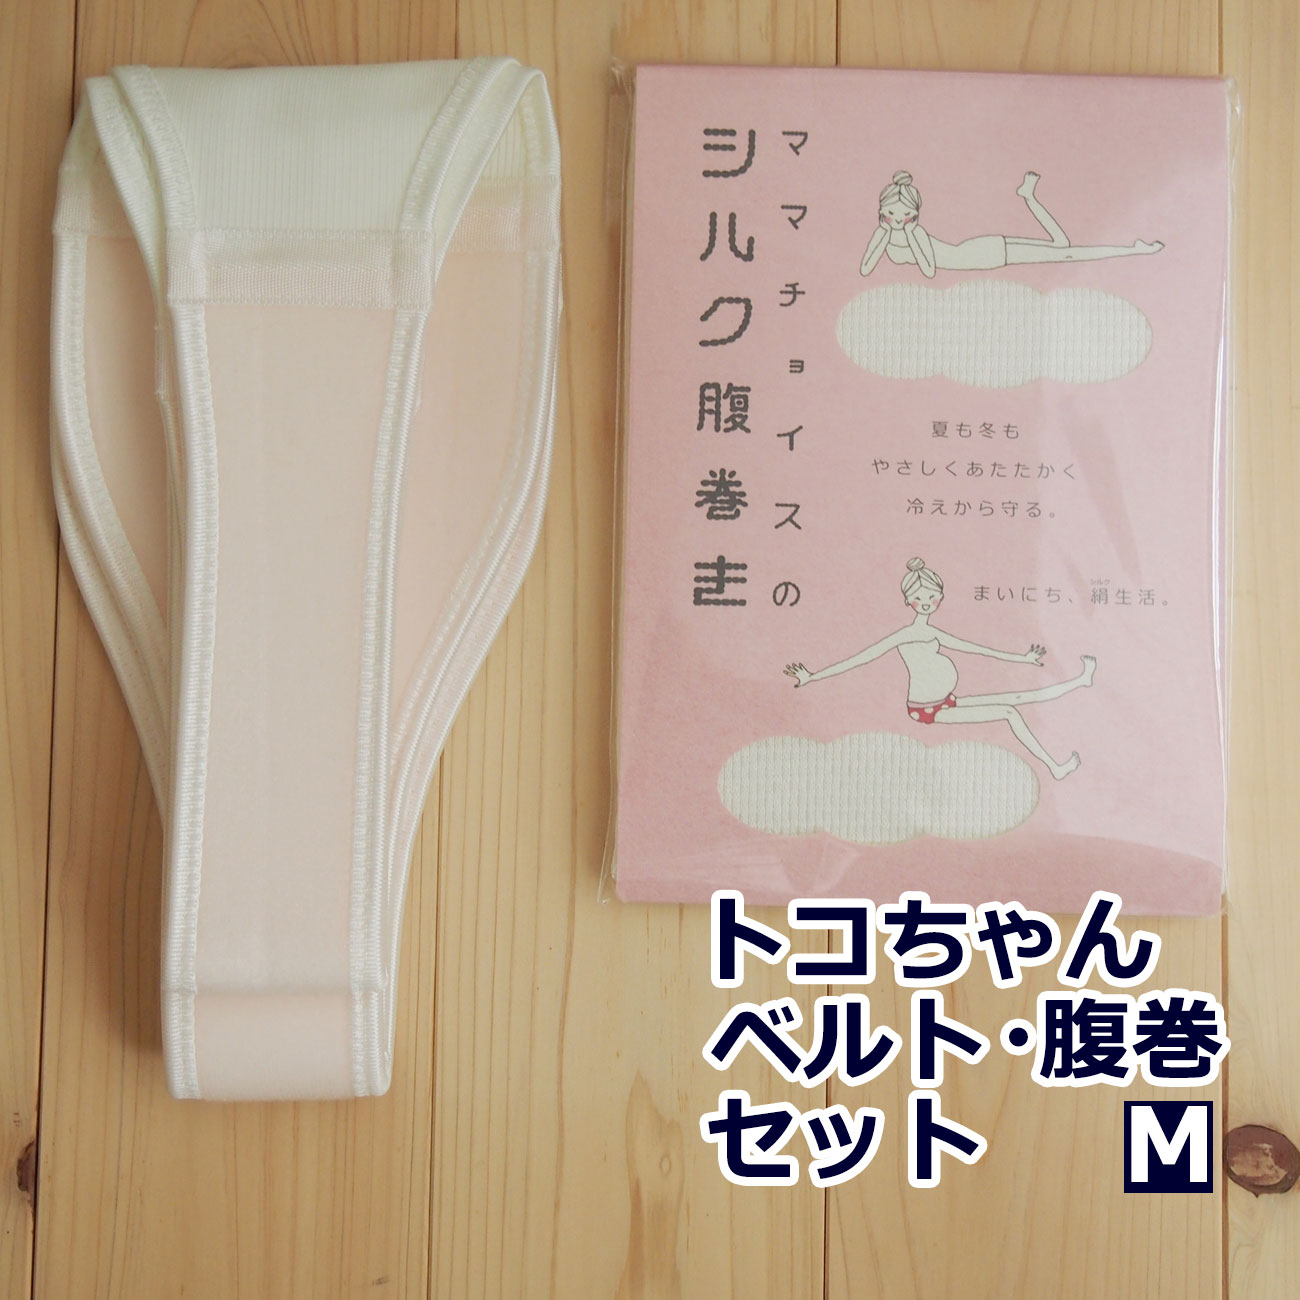 トコちゃんベルト 2 セット M サイズ 腹巻 シルク腹巻き ふわっと腹巻 産後 腹帯 妊婦帯 日本製 腰痛ベルト